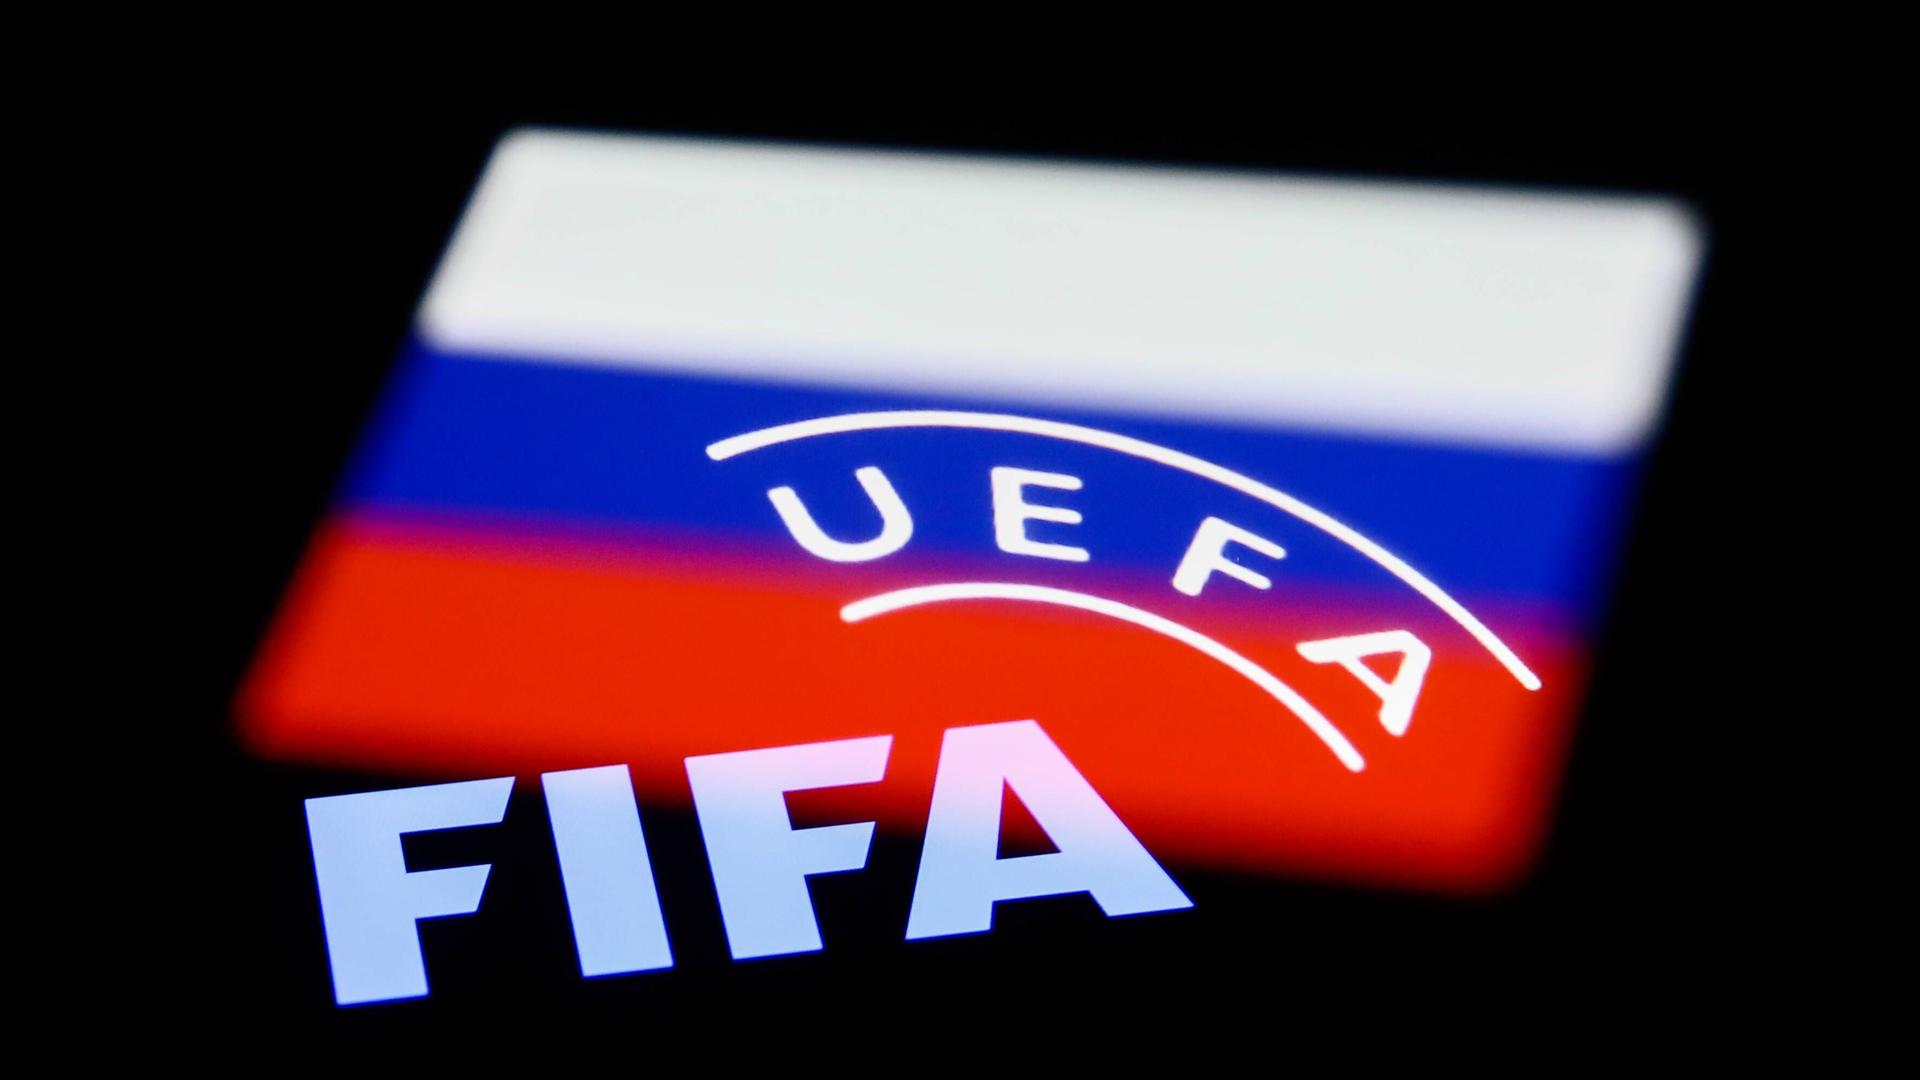 Das Bild zeigt die russische Flagge und auf ihr die Schriftzüge UEFA und FIFA.